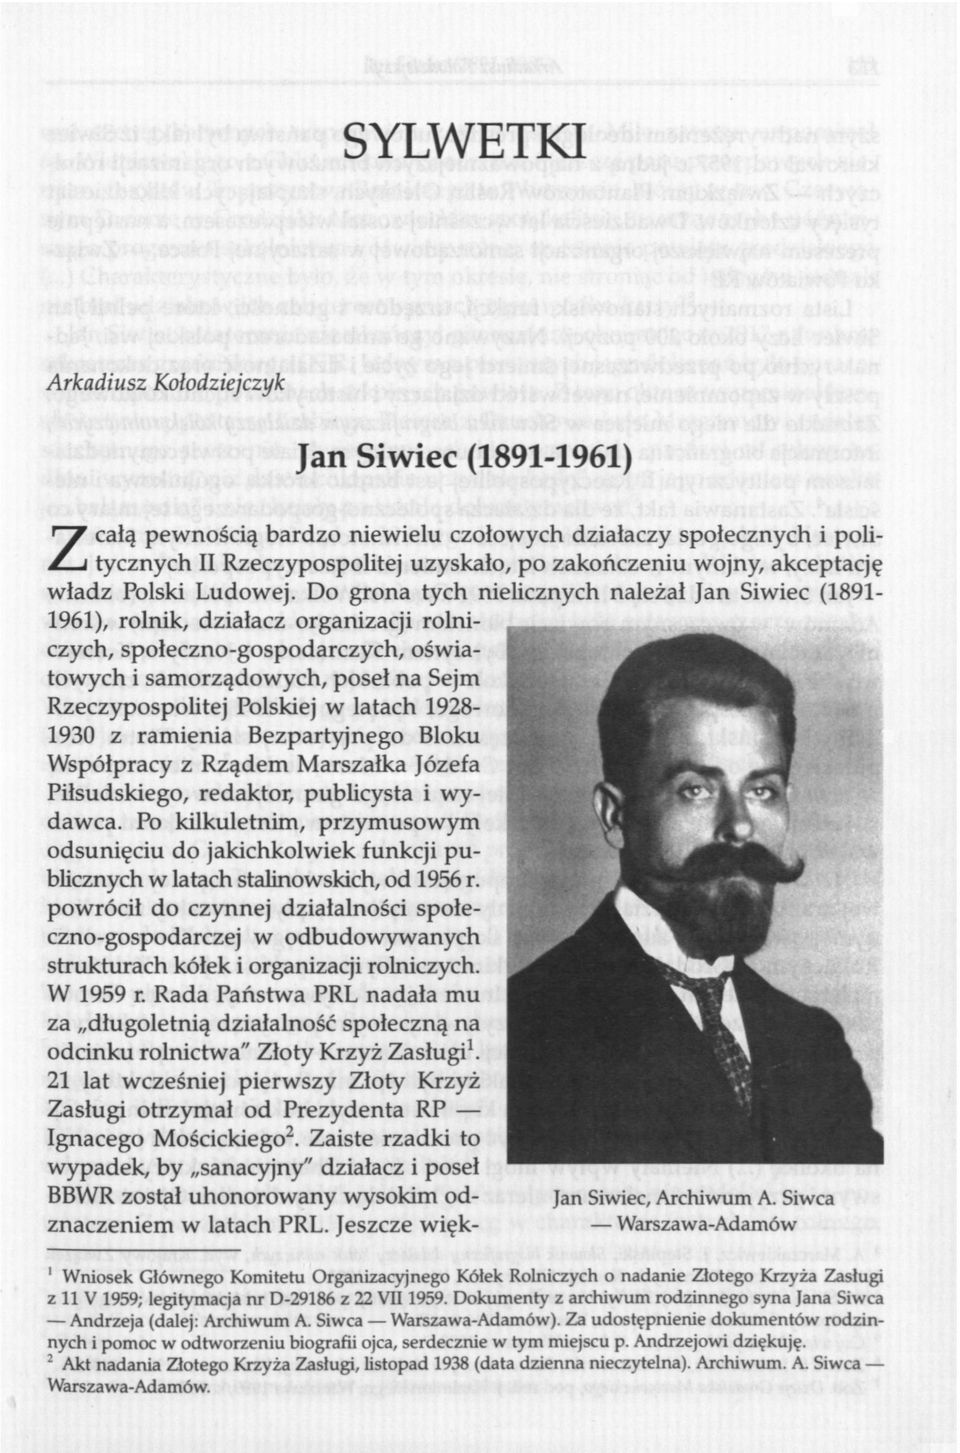 Do grona tych nielicznych należał Jan Siwiec (1891-1961), rolnik, działacz organizacji rolniczych, społeczno-gospodarczych, oświatowych i samorządowych, poseł na Sejm Rzeczypospolitej Polskiej w